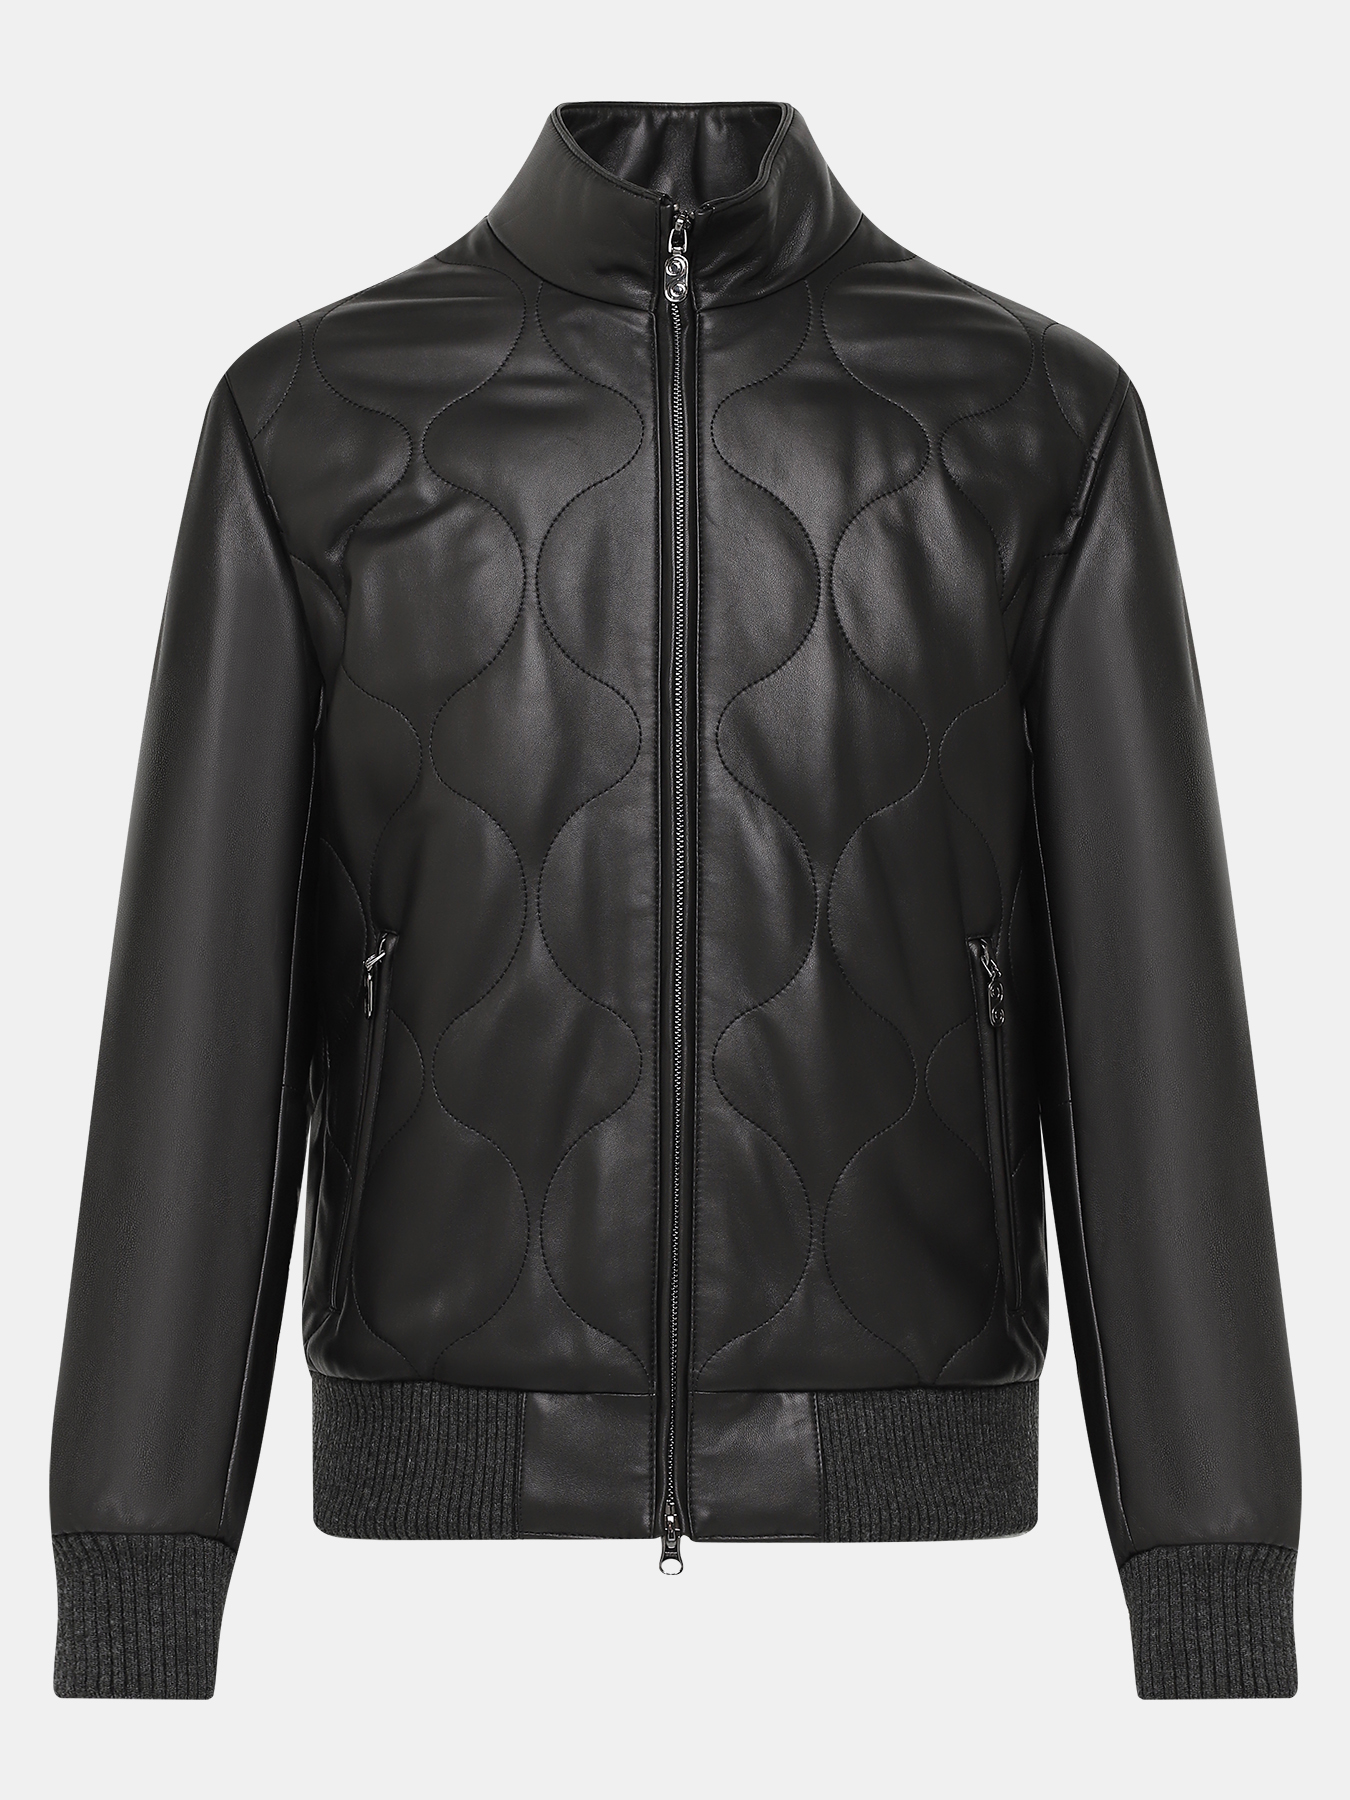 Кожаная куртка Alessandro Manzoni 390968-030, цвет черный, размер 58 - фото 1